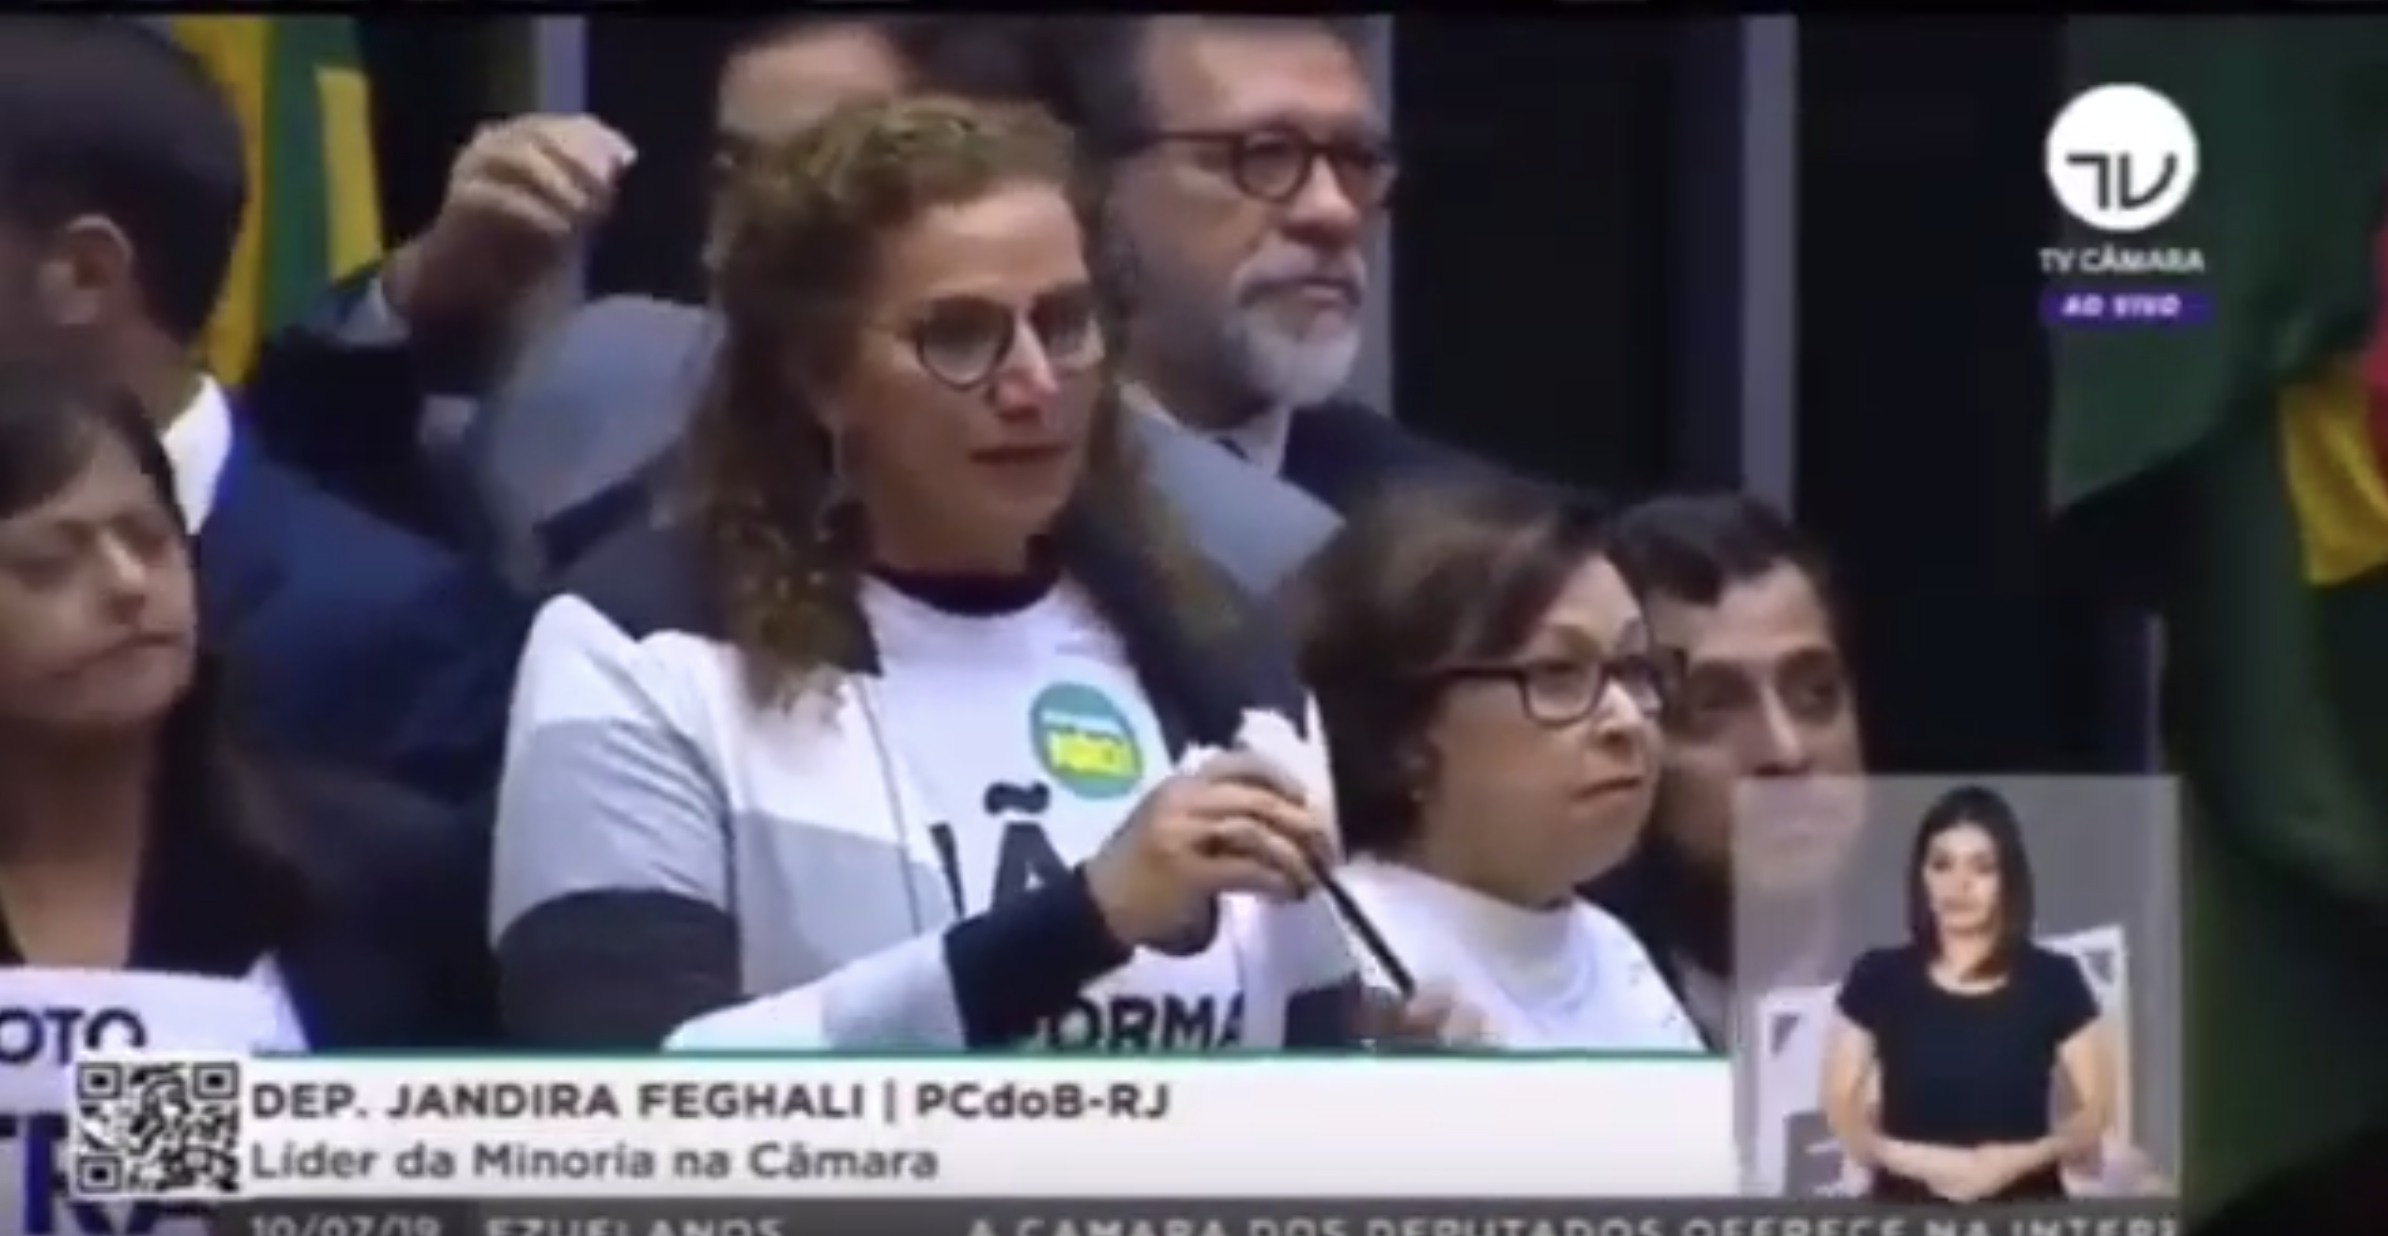 A líder da Minoria na Câmara, deputada Jandira Feghali (PCdoB/RJ), defende a aposentadoria dos trabalhadores em discurso contra o texto base da Reforma da Previdência., SISEJUFE